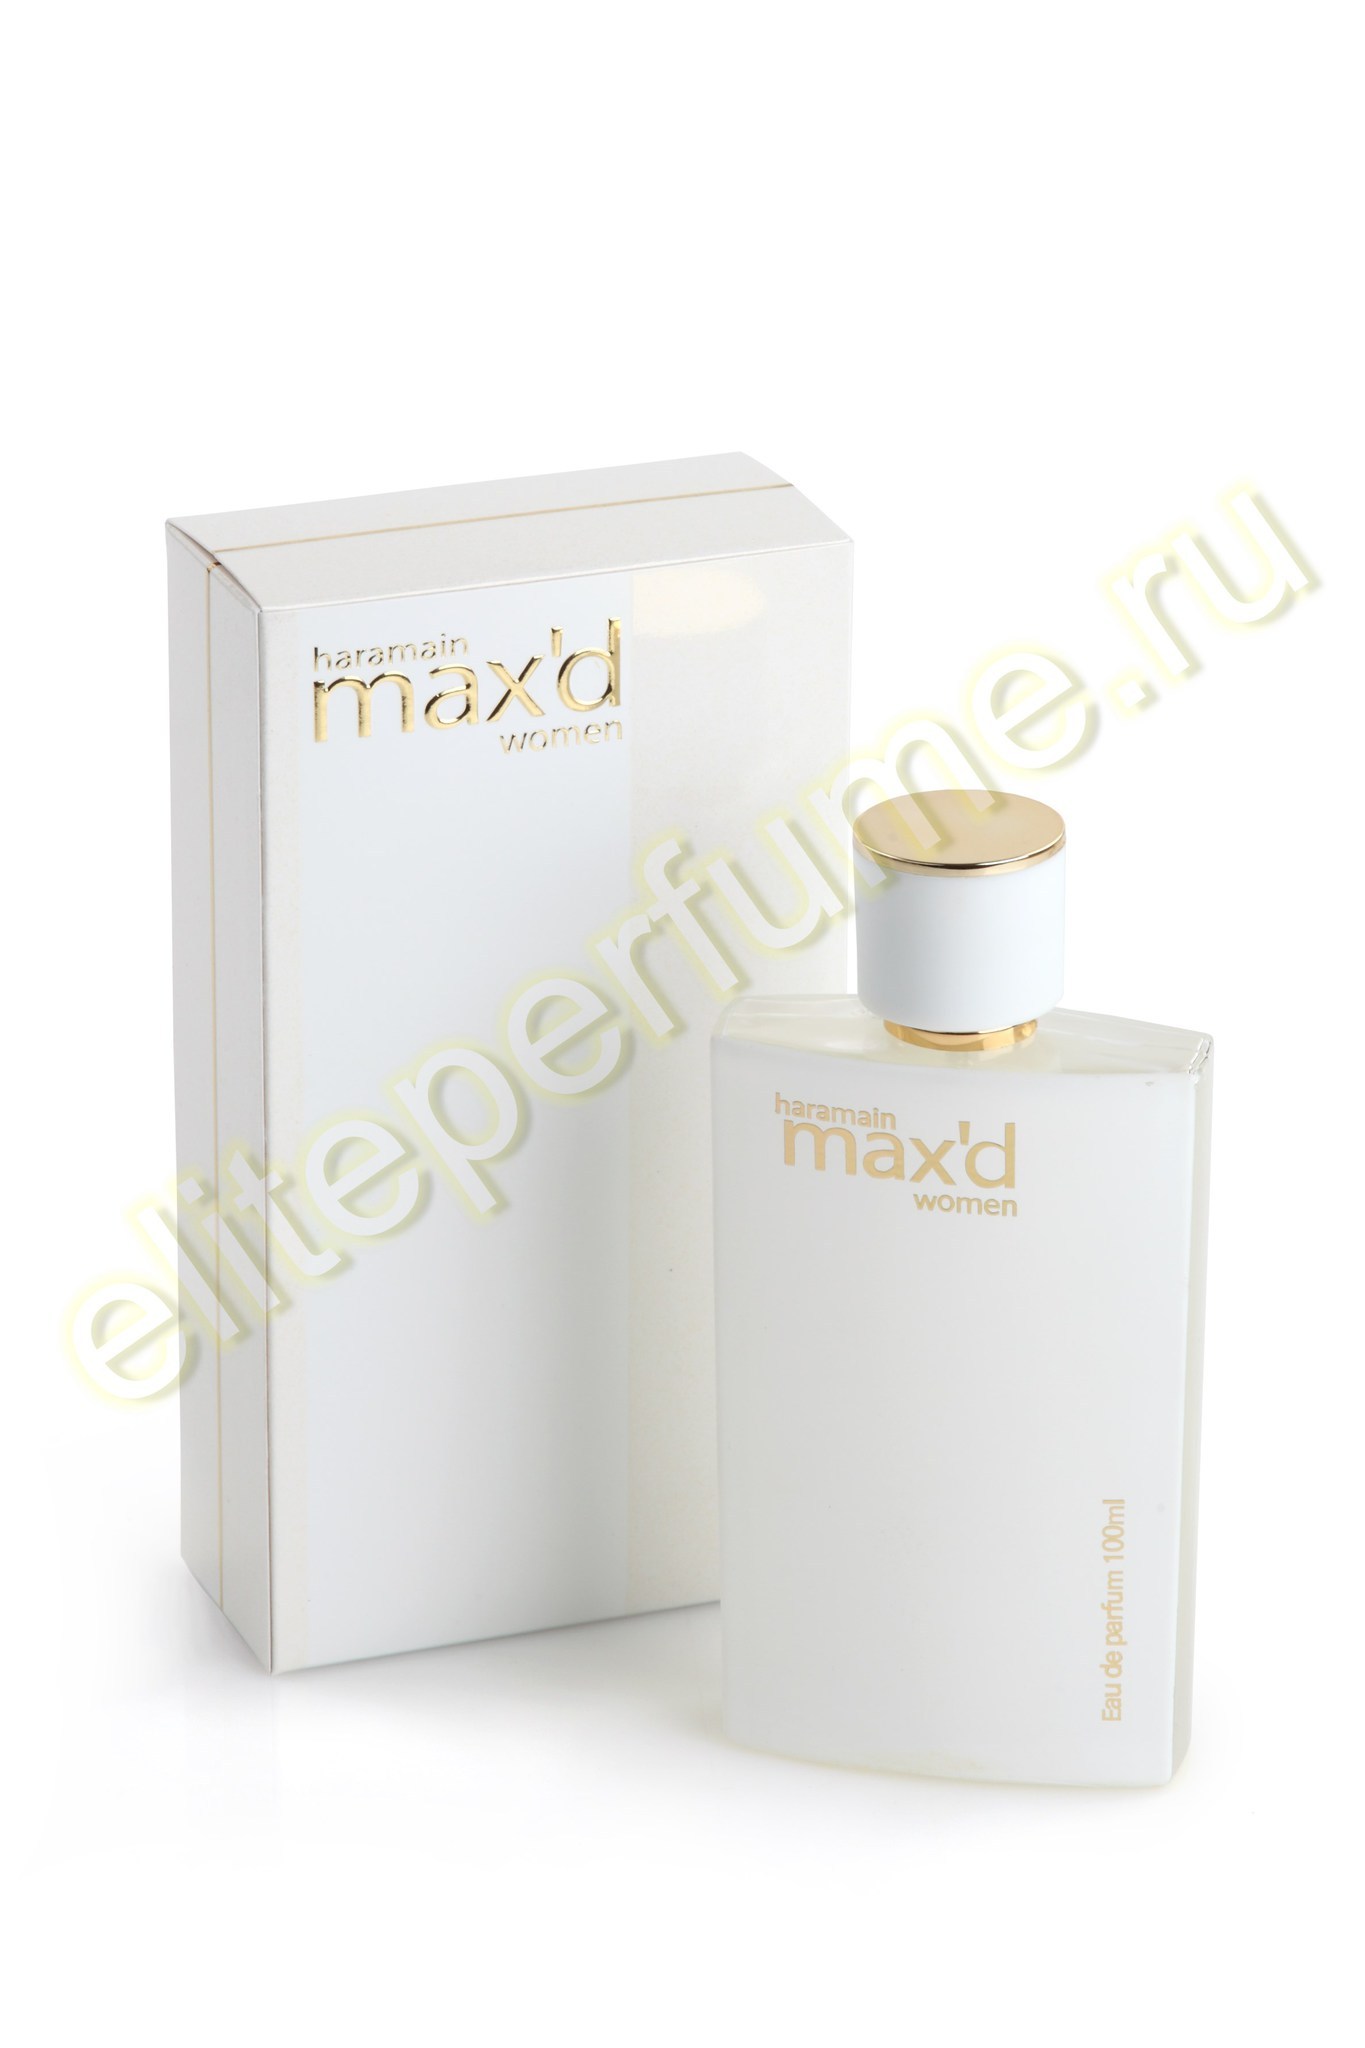 Пробники для духов Haramain max'd women Харамайн максид женский 1 мл спрей от Аль Харамайн Al Haramain Perfumes